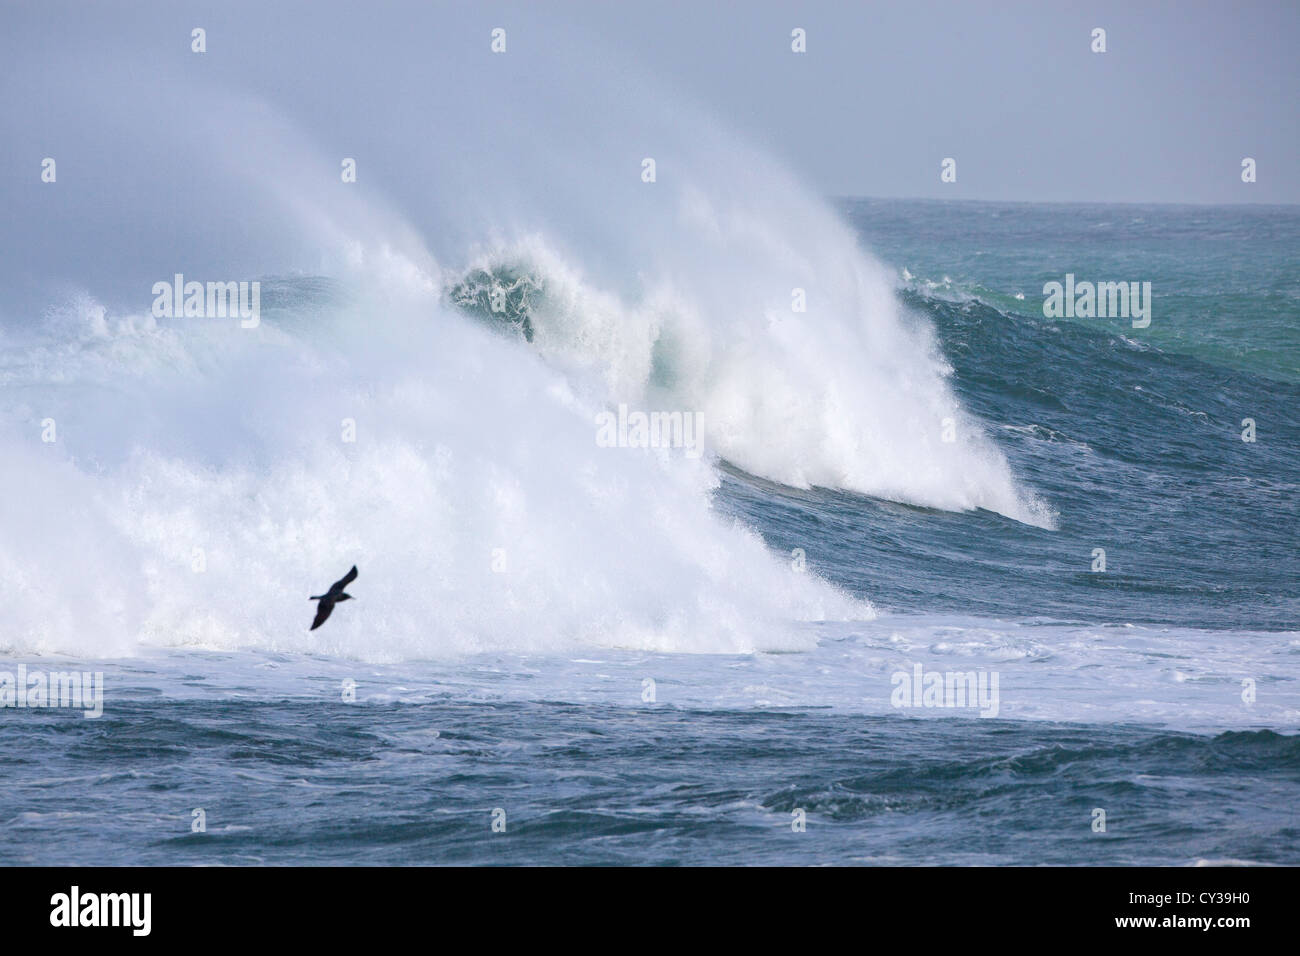 A gull flies over a crashing wave along the California coast. Stock Photo